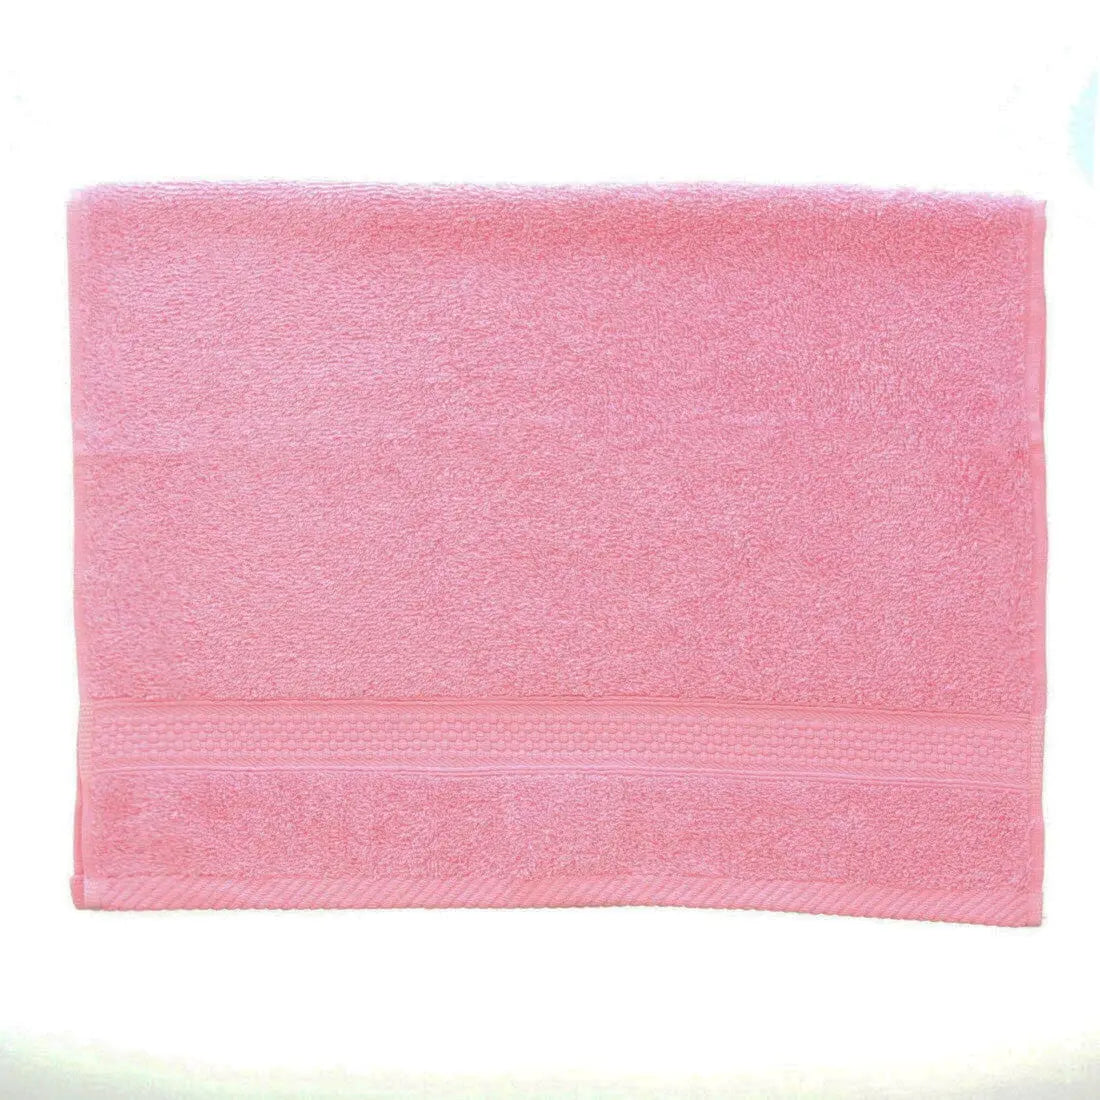 pink variation folded in half